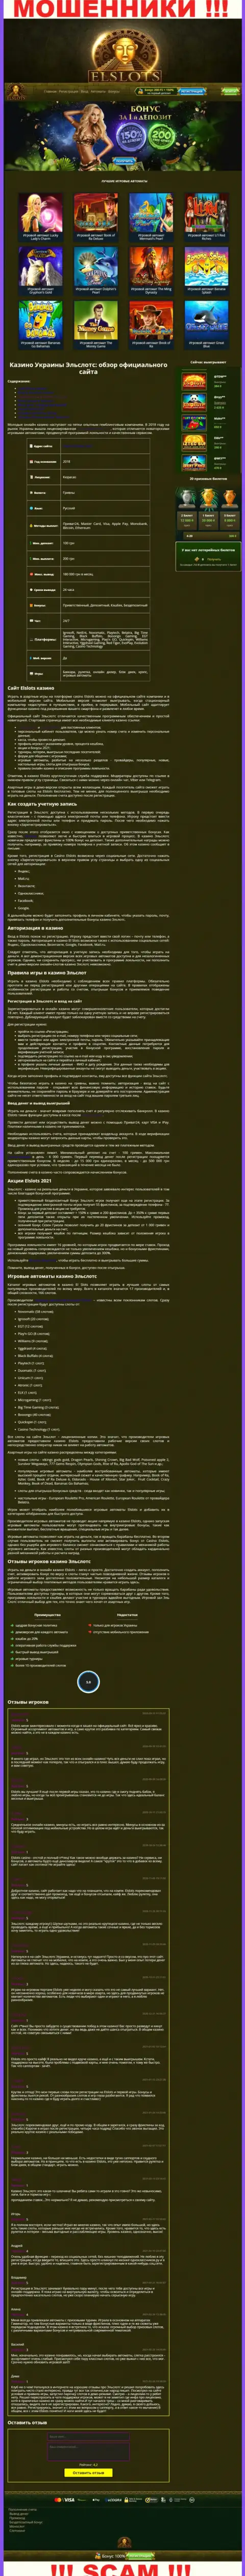 Внешний вид официальной web страницы мошеннической организации ElSlots